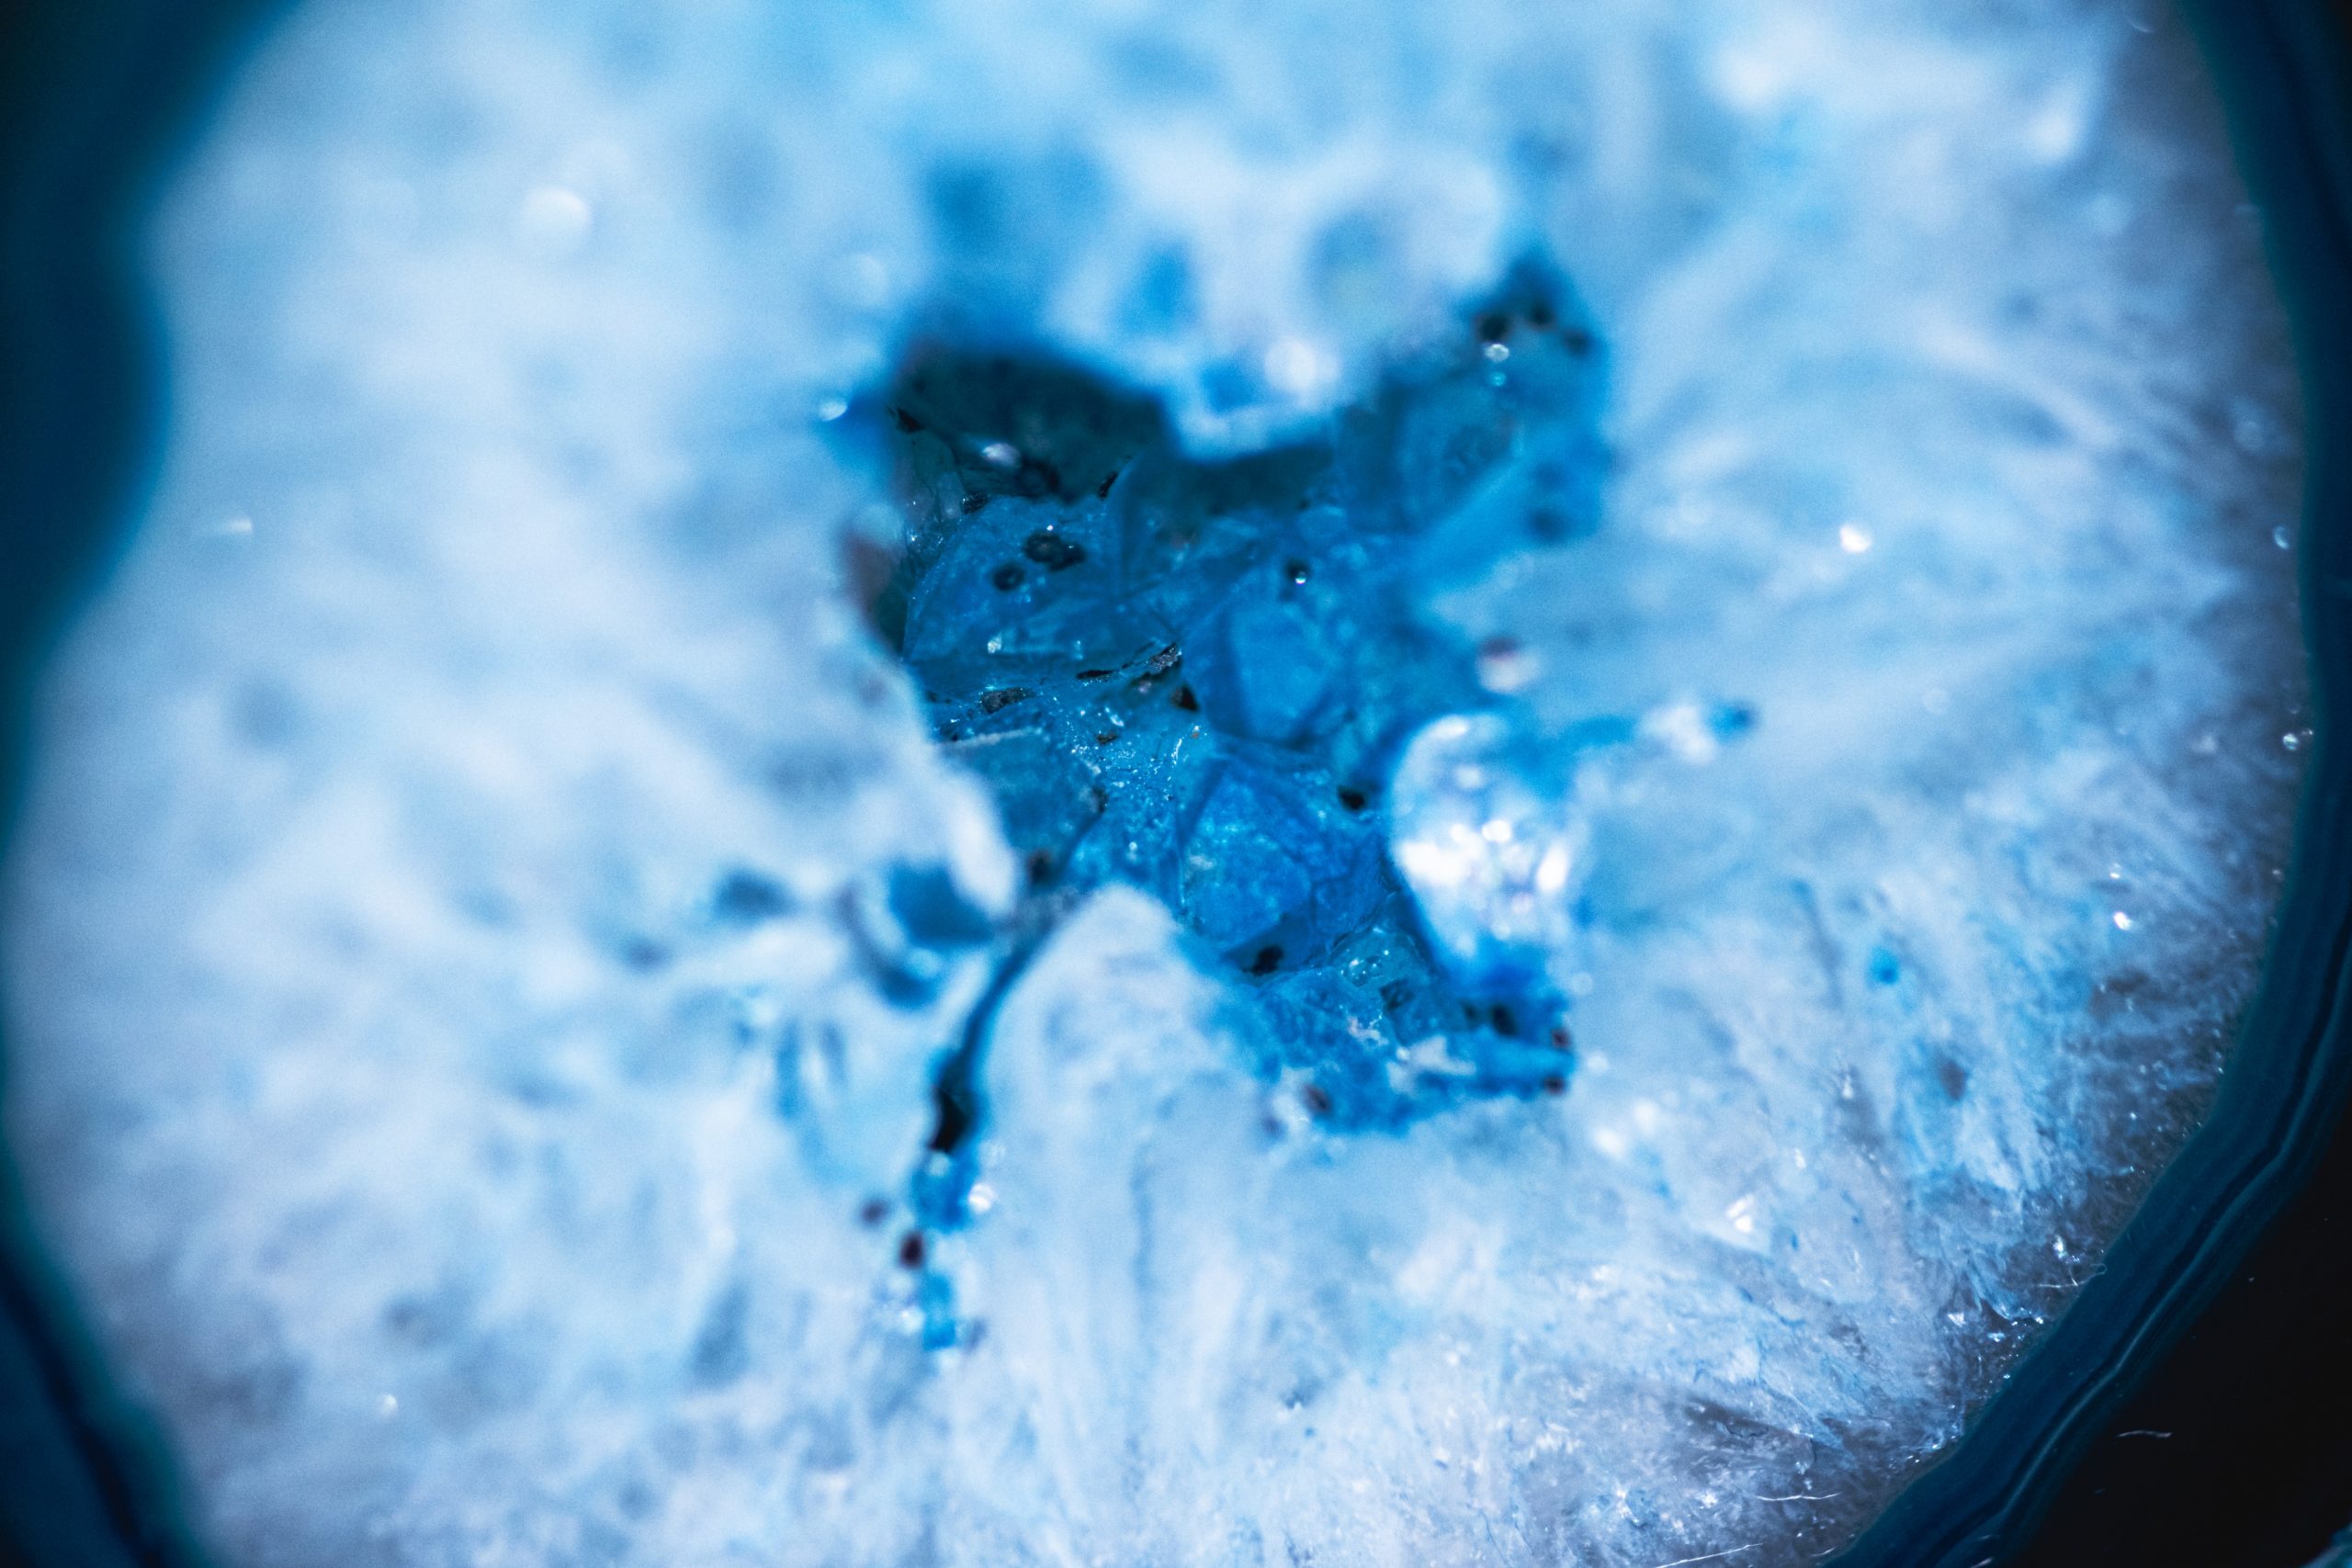 A closer look inside an icey blue geode